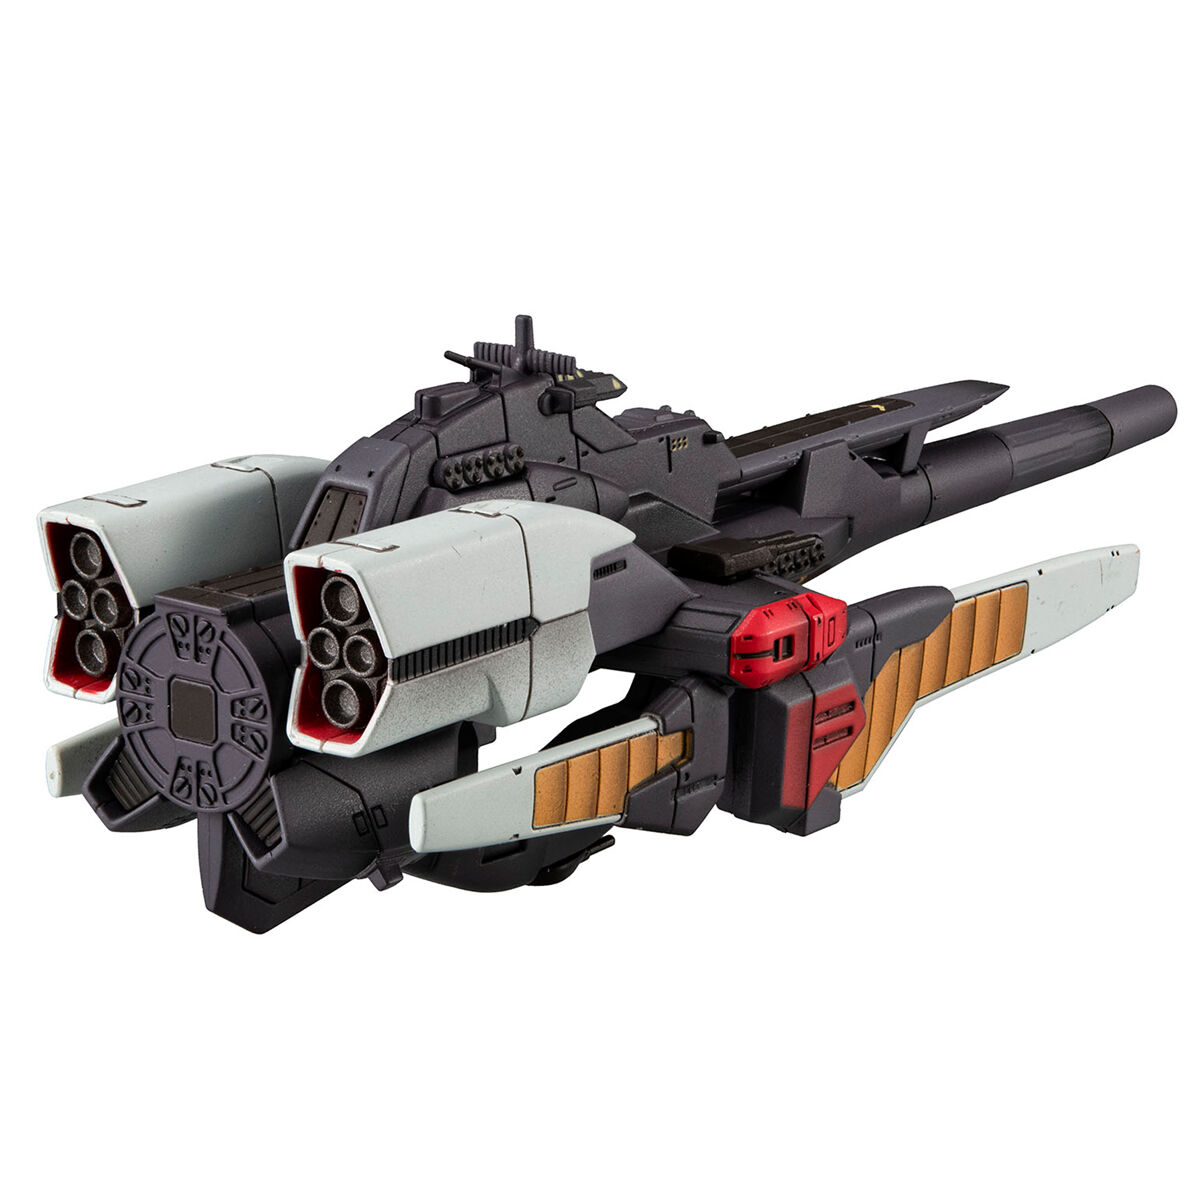 コスモフリートスペシャル『リーンホースJr.Re.』機動戦士Vガンダム 完成品モデル-004